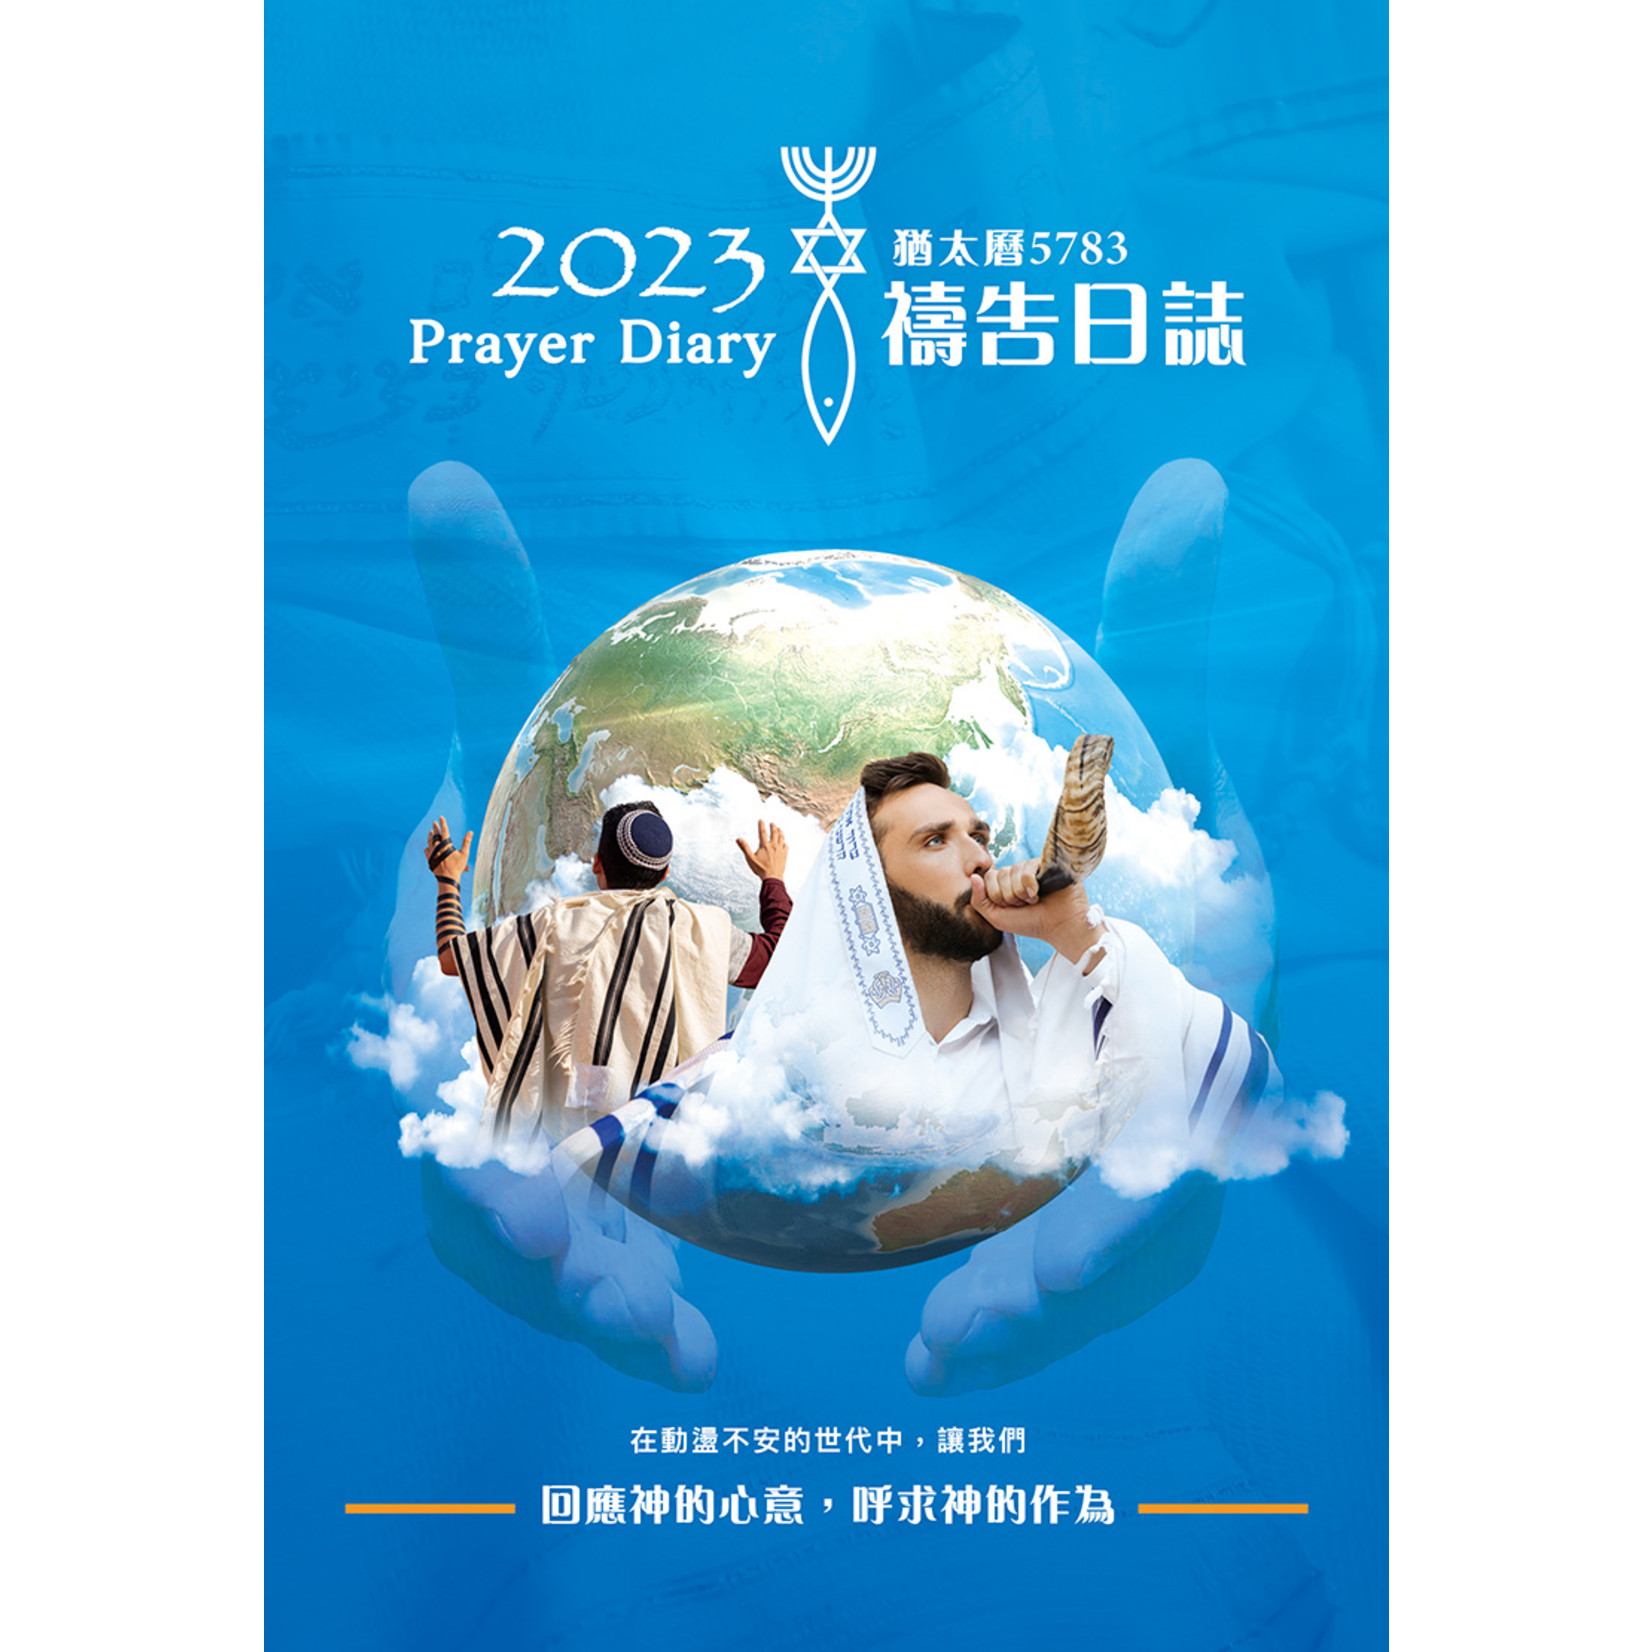 以琳 Elim (TW) 2023禱告日誌：猶太曆（穹蒼藍）| 2023 Prayer Diary